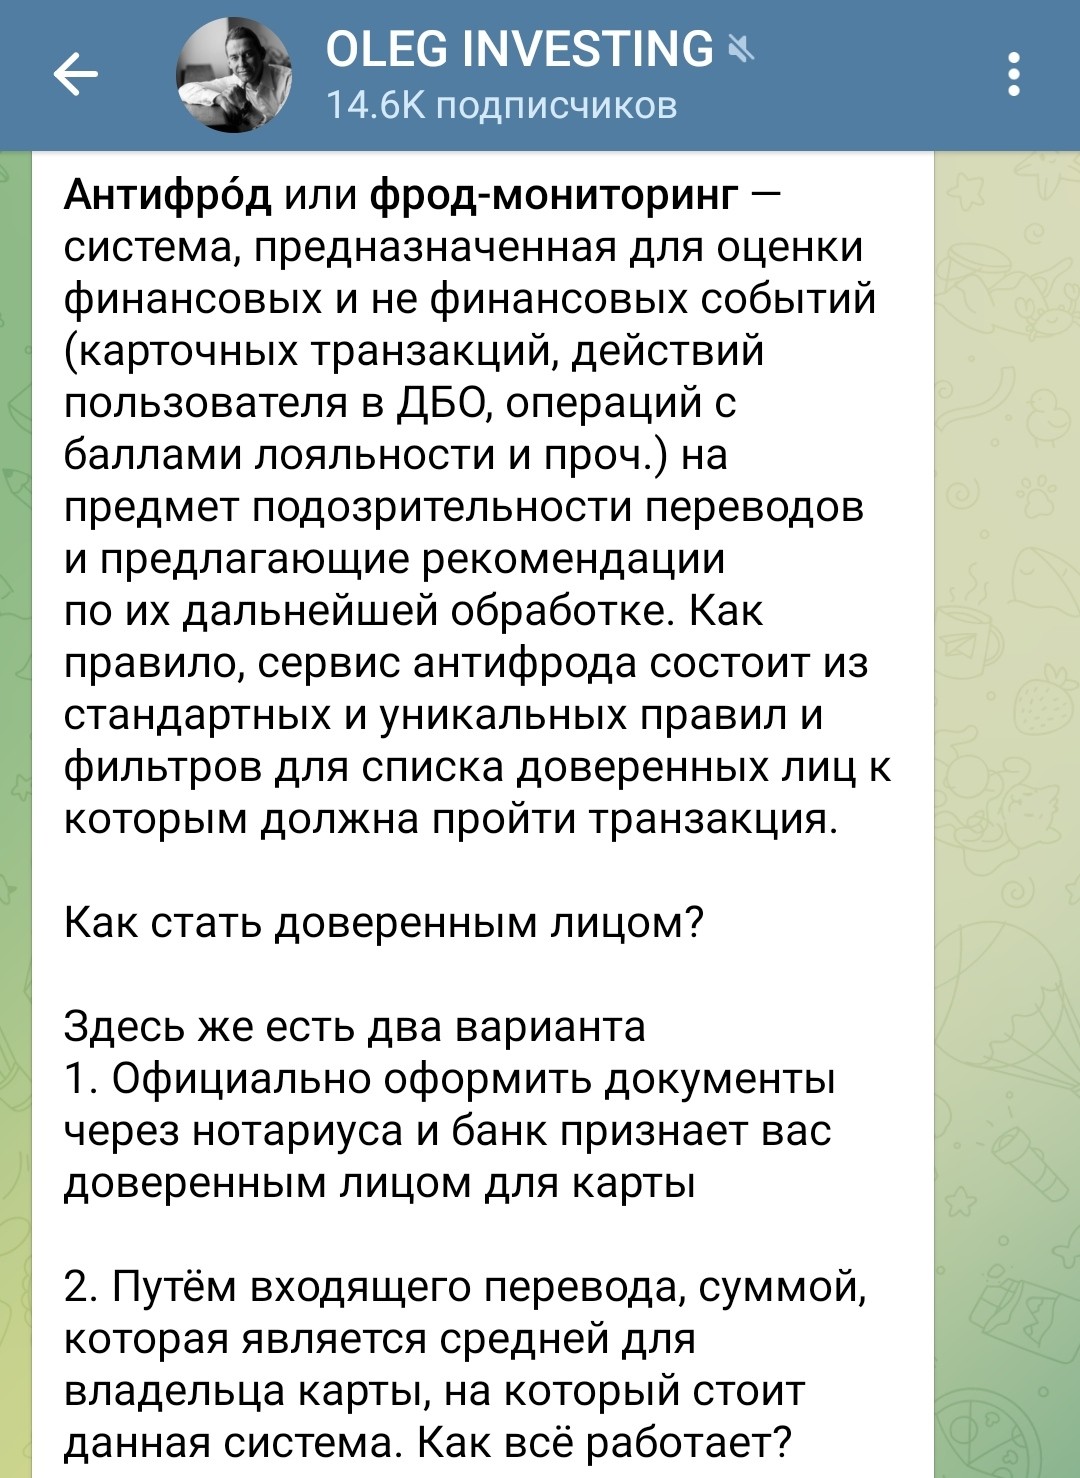 Телеграм Oleg Investing о антифрод системе